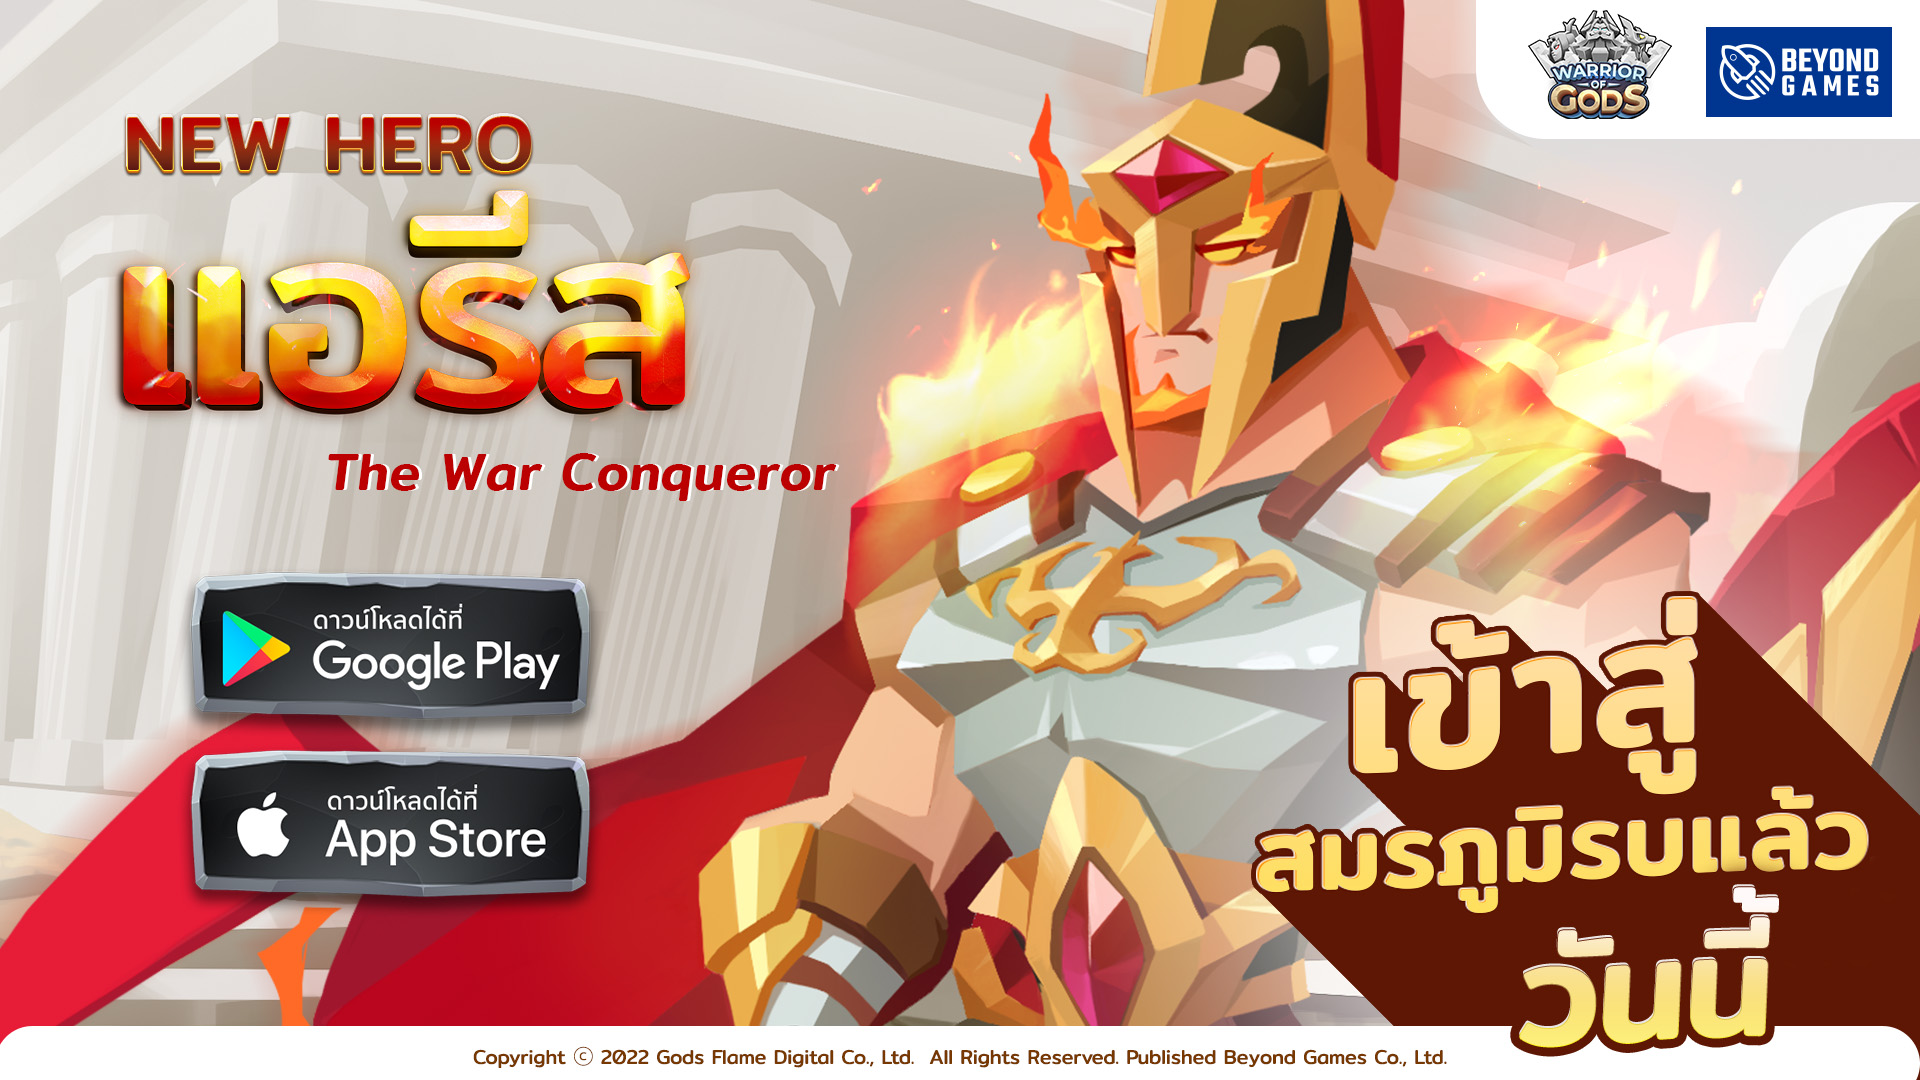 Warrior of Gods เปิดตัว "แอรีส" เทพแห่งสงคราม และดันเจี้ยนใหม่ พร้อมเข้าสู่สมรภูมิแล้ว ทั้ง iOS และ Android